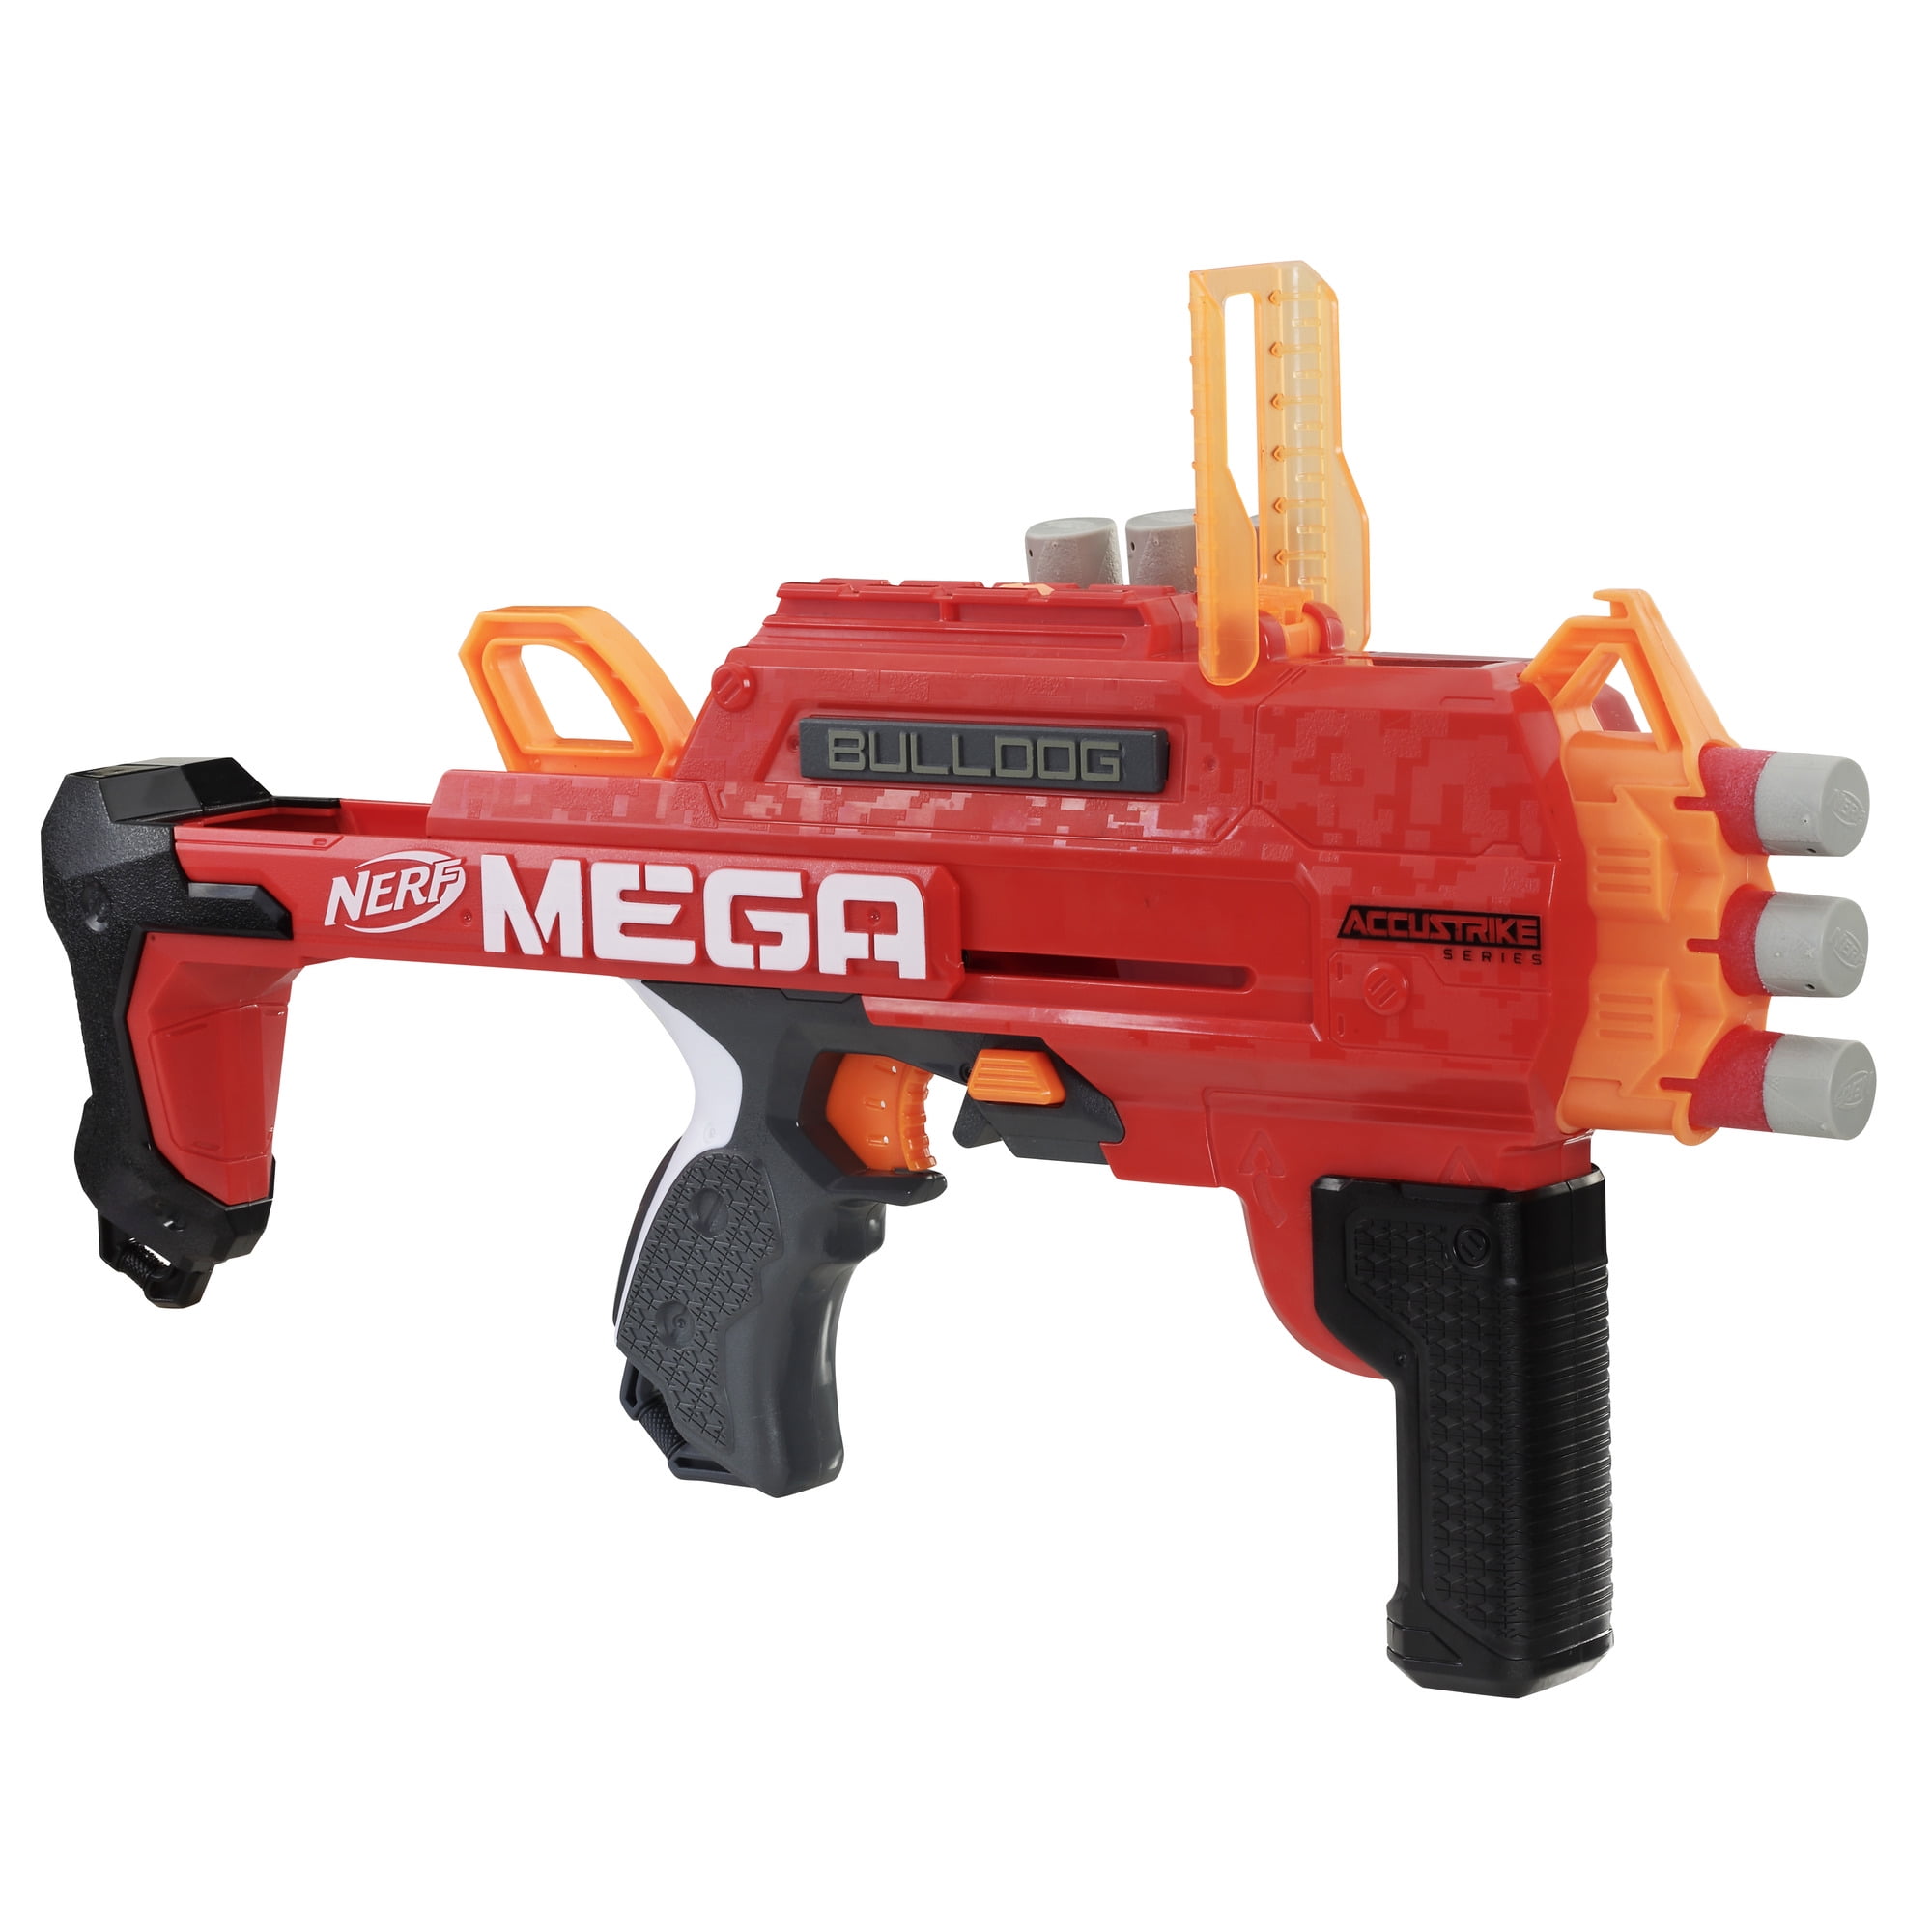 Nerf Mega in Nerf Blasters 